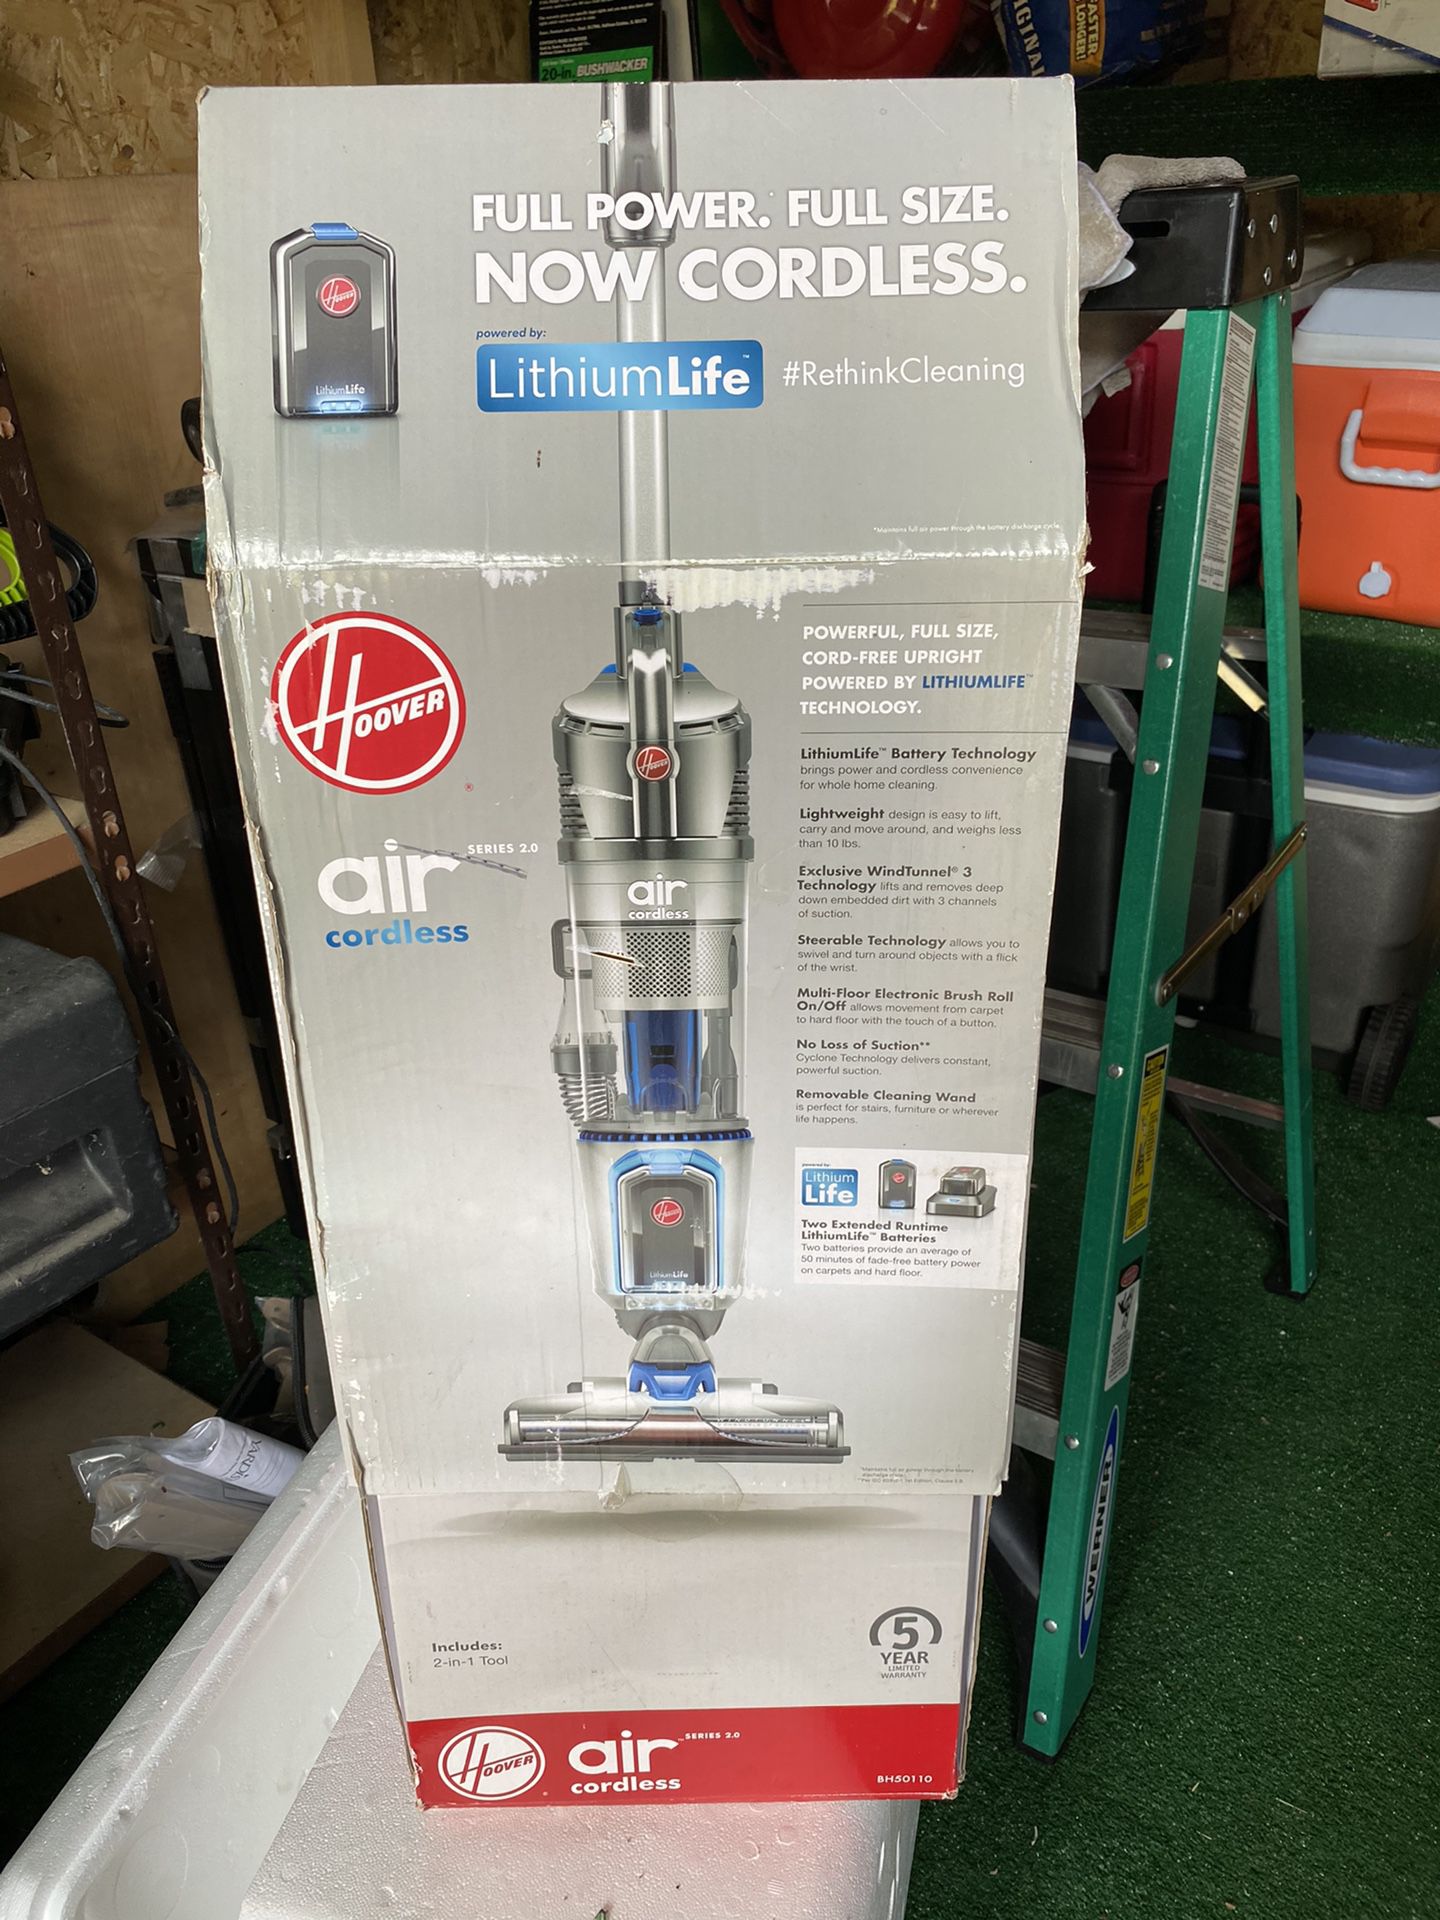 Hoover Air Cordless series 2.0 vacuum cleaner